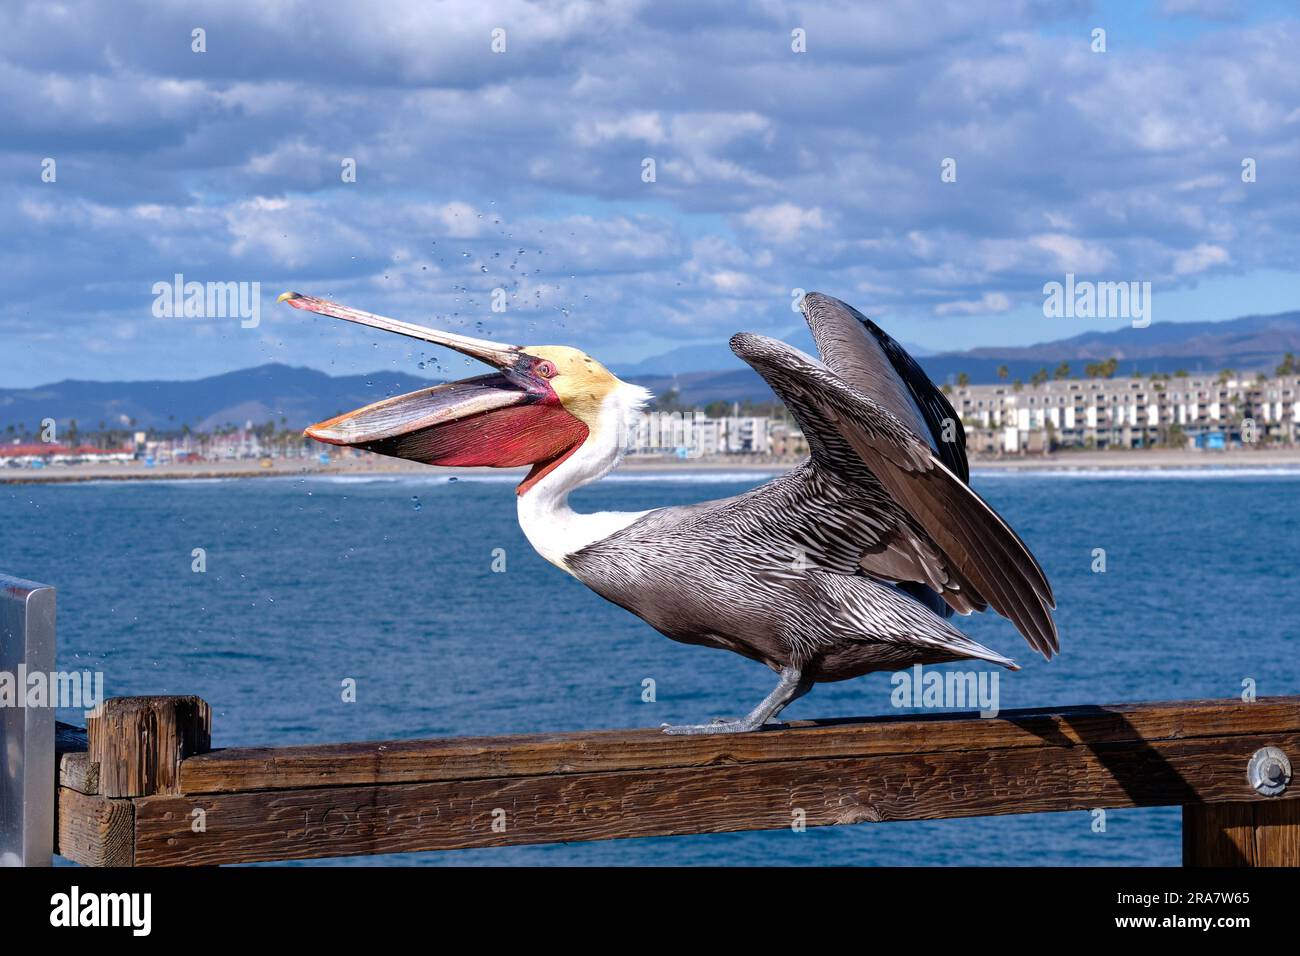 Weit Aufmachen! Der braune Pelikan öffnet Schnabel und Flügel und zeigt einen roten Halsbeutel an, während er auf Fische wartet. Oceanside Municipal Fishing Pier, Kalifornien. Stockfoto